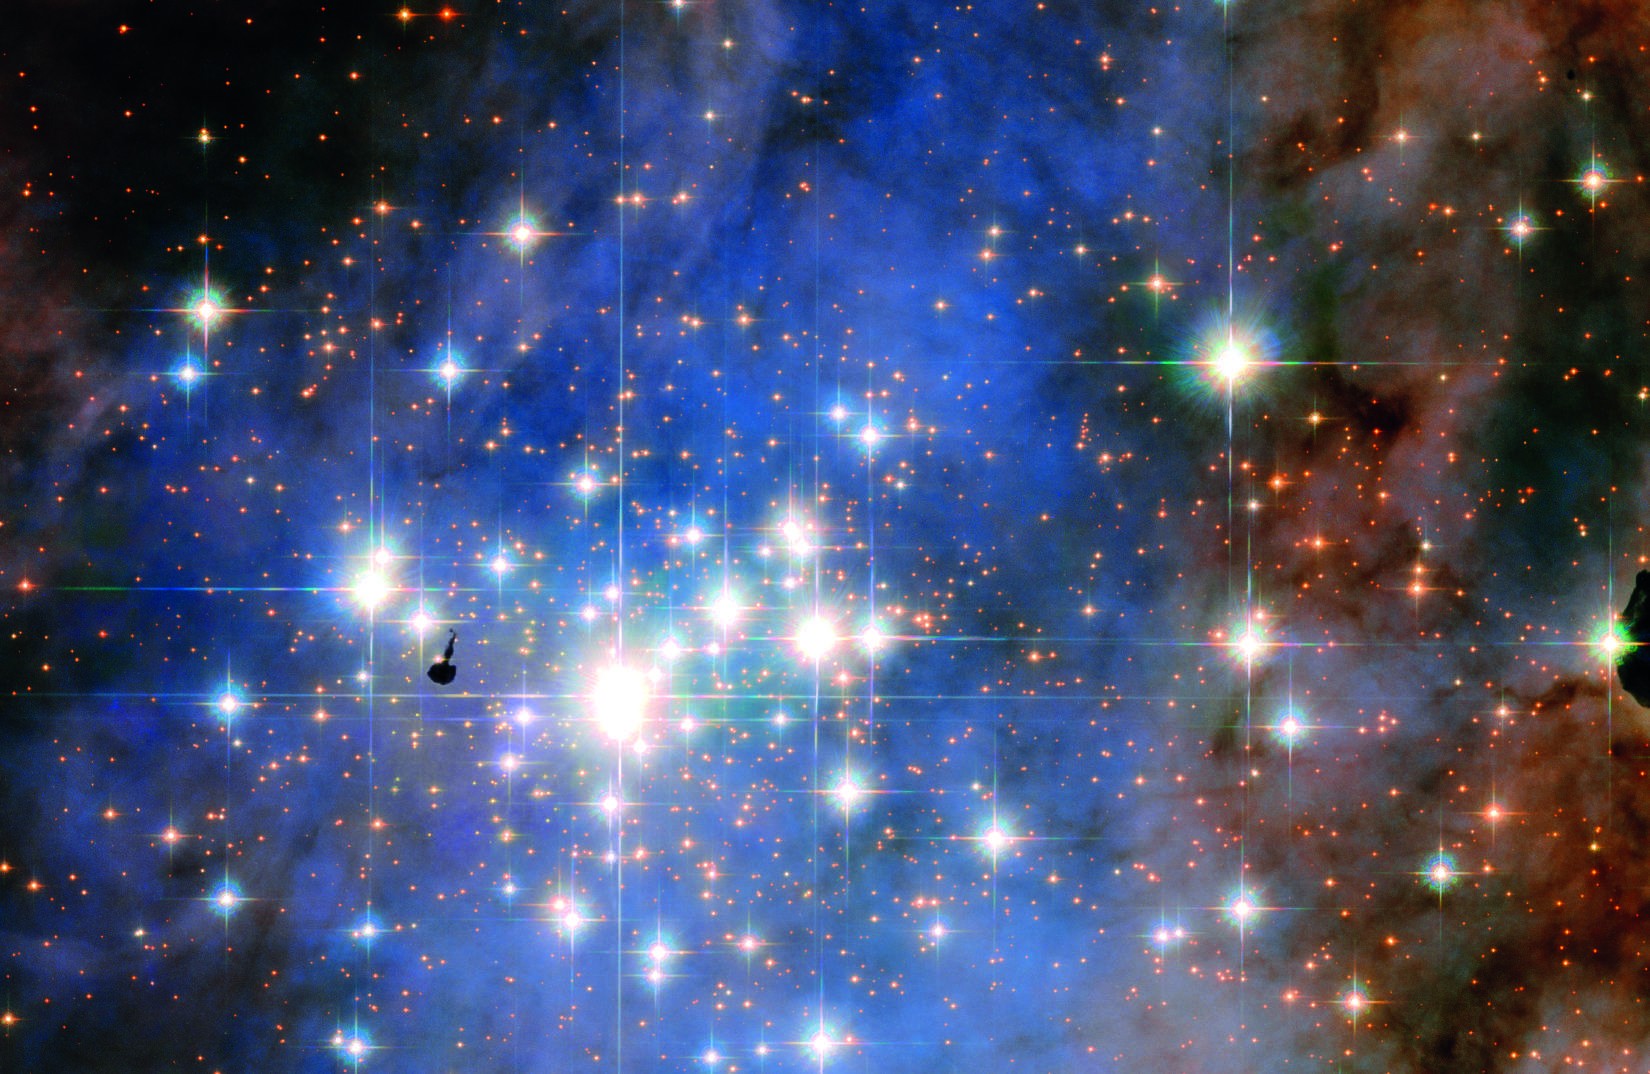 Aglomerado de estrelas Trumpler 14 (Foto: ESA/Hubble)